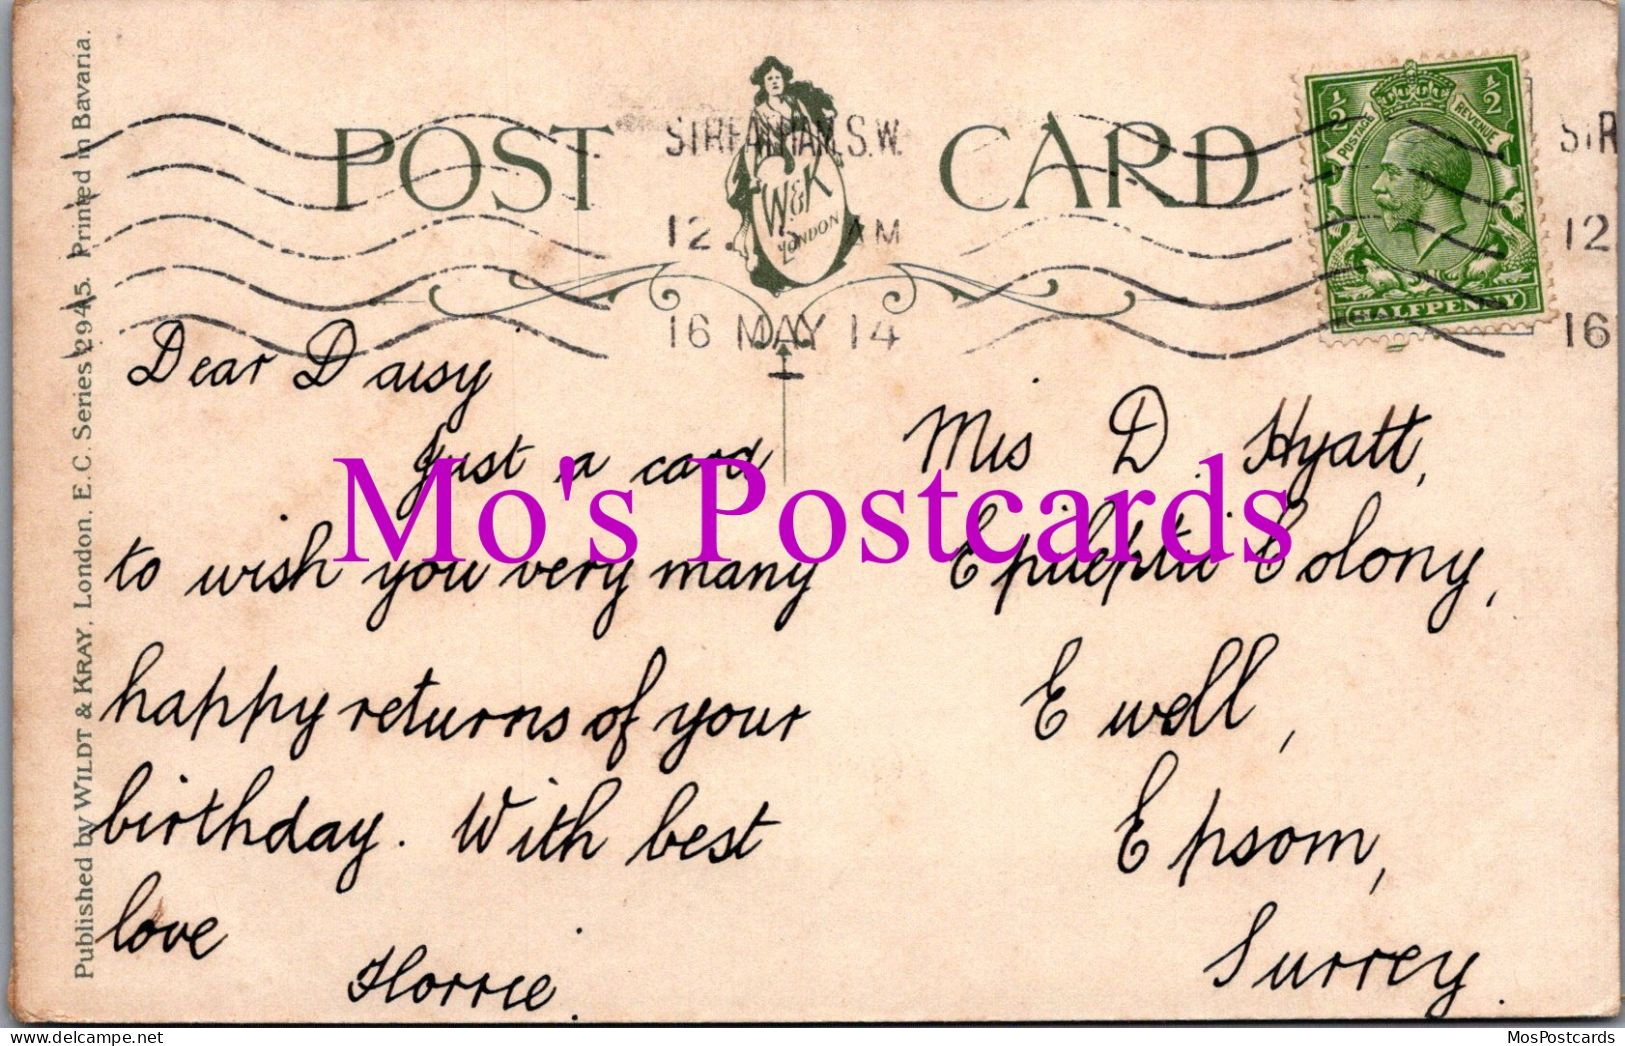 Greetings Postcard - Birthday Greetings - Vase Of Roses   DZ88 - Birthday